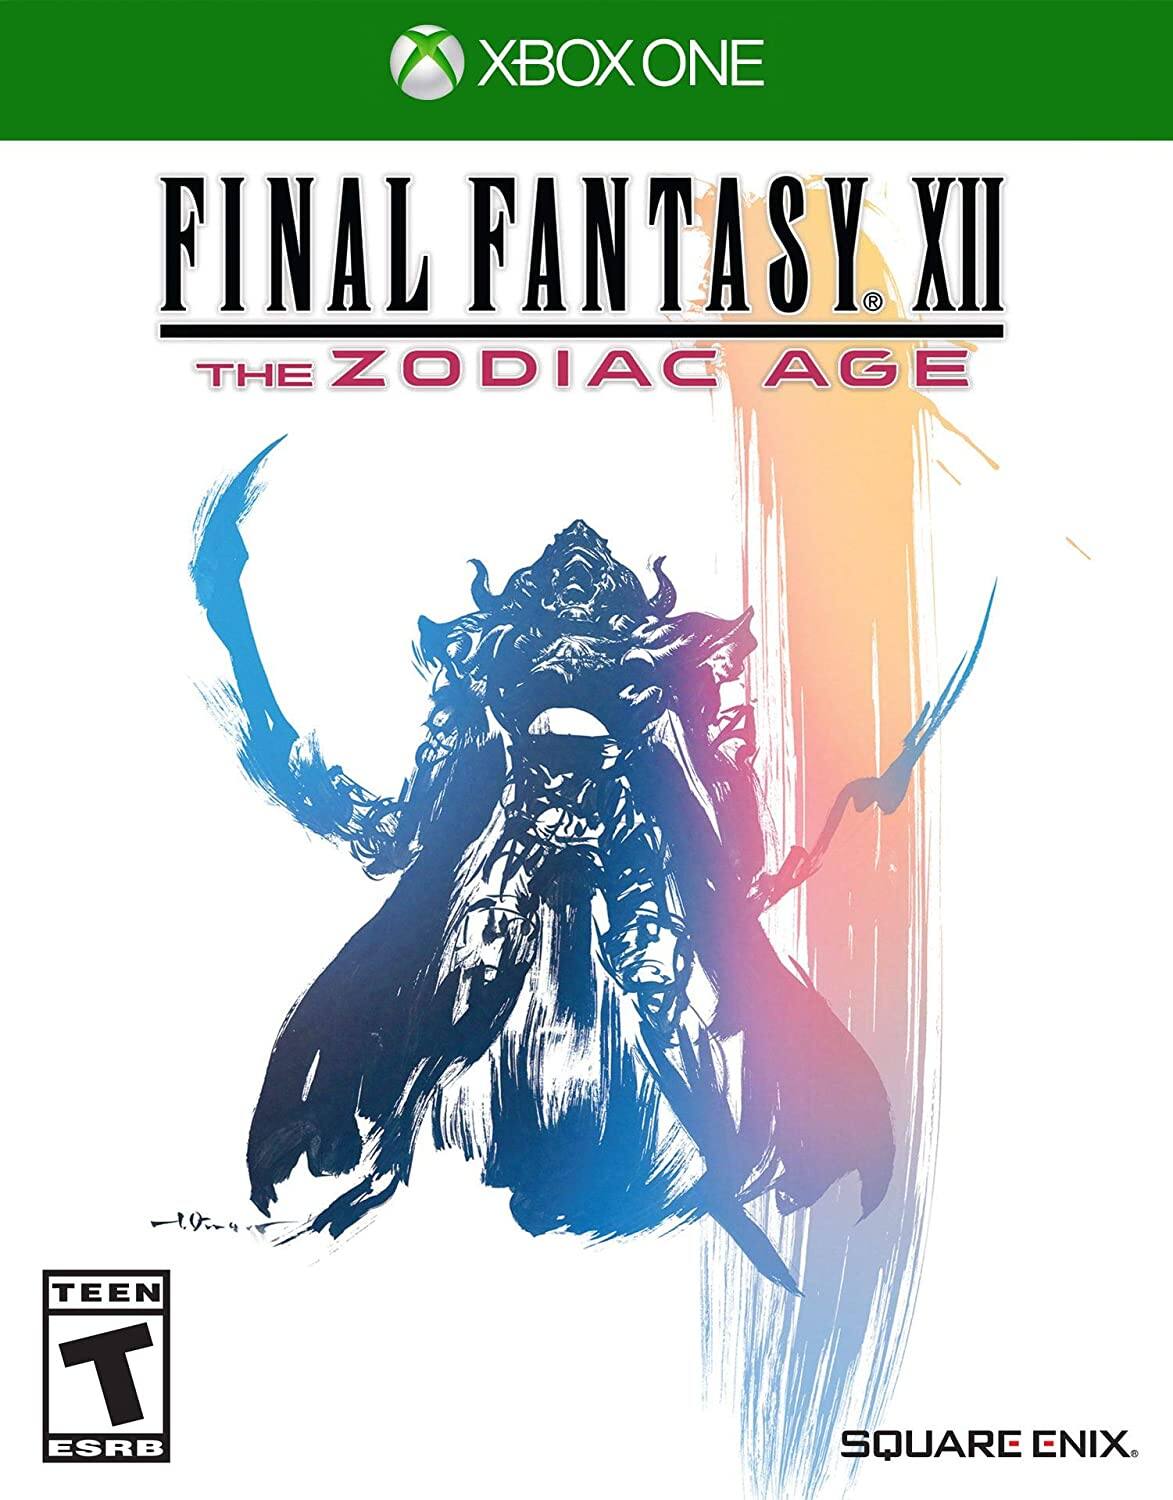 Final Fantasy XII The Zodiac Age (Xbox One) $7.88 @ Amazon